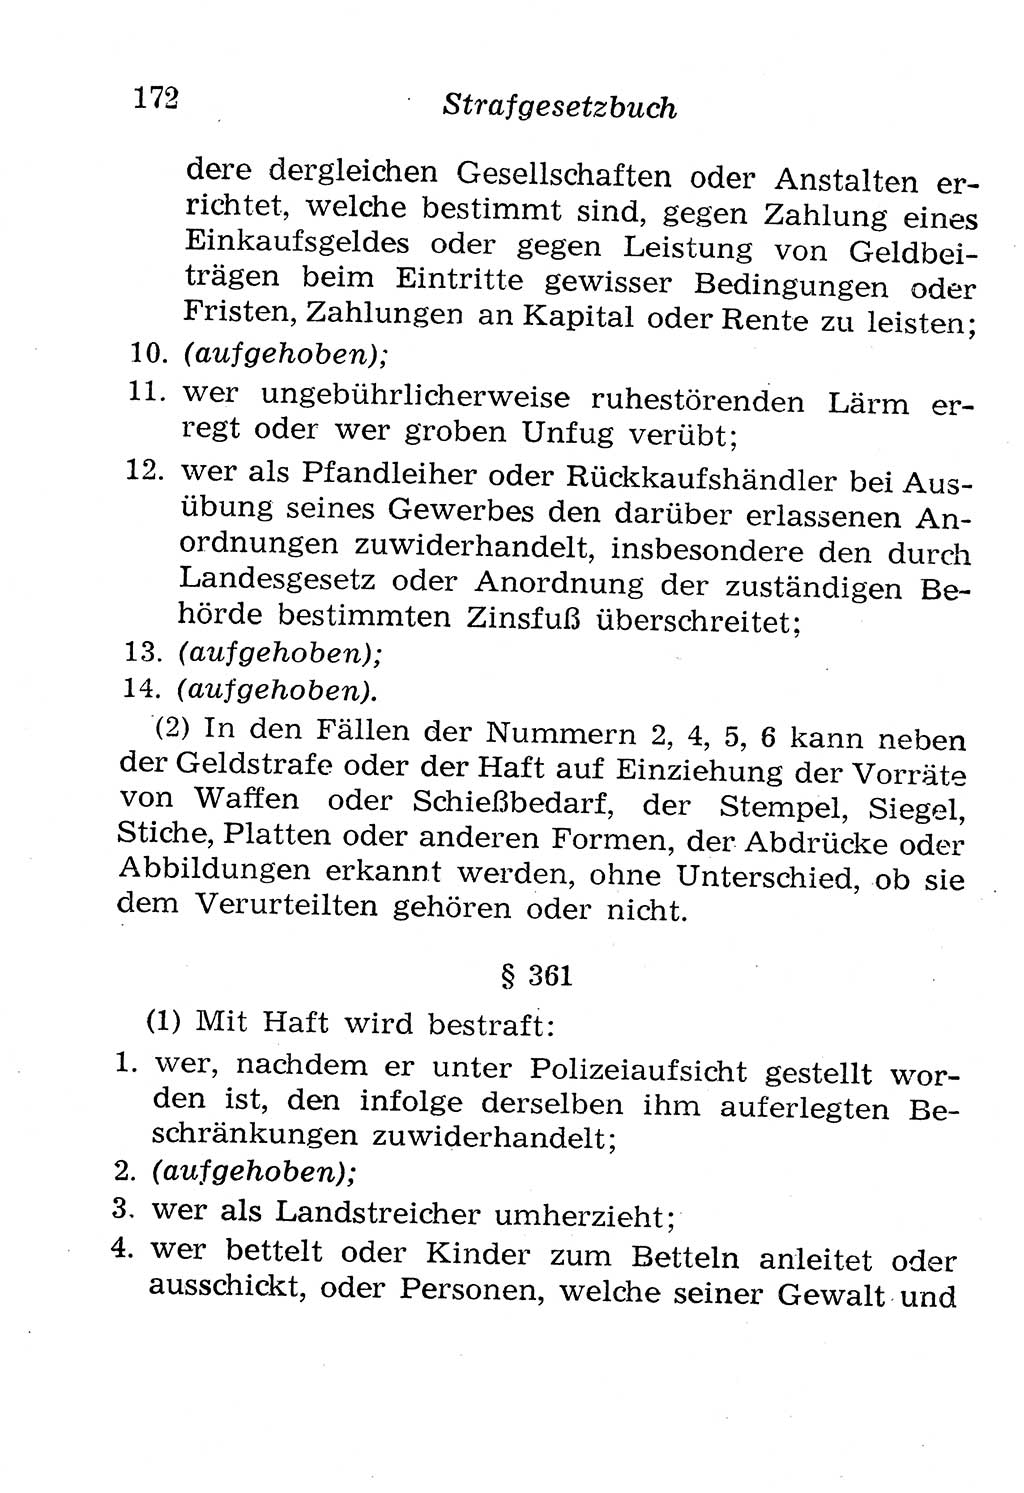 Strafgesetzbuch (StGB) und andere Strafgesetze [Deutsche Demokratische Republik (DDR)] 1958, Seite 172 (StGB Strafges. DDR 1958, S. 172)